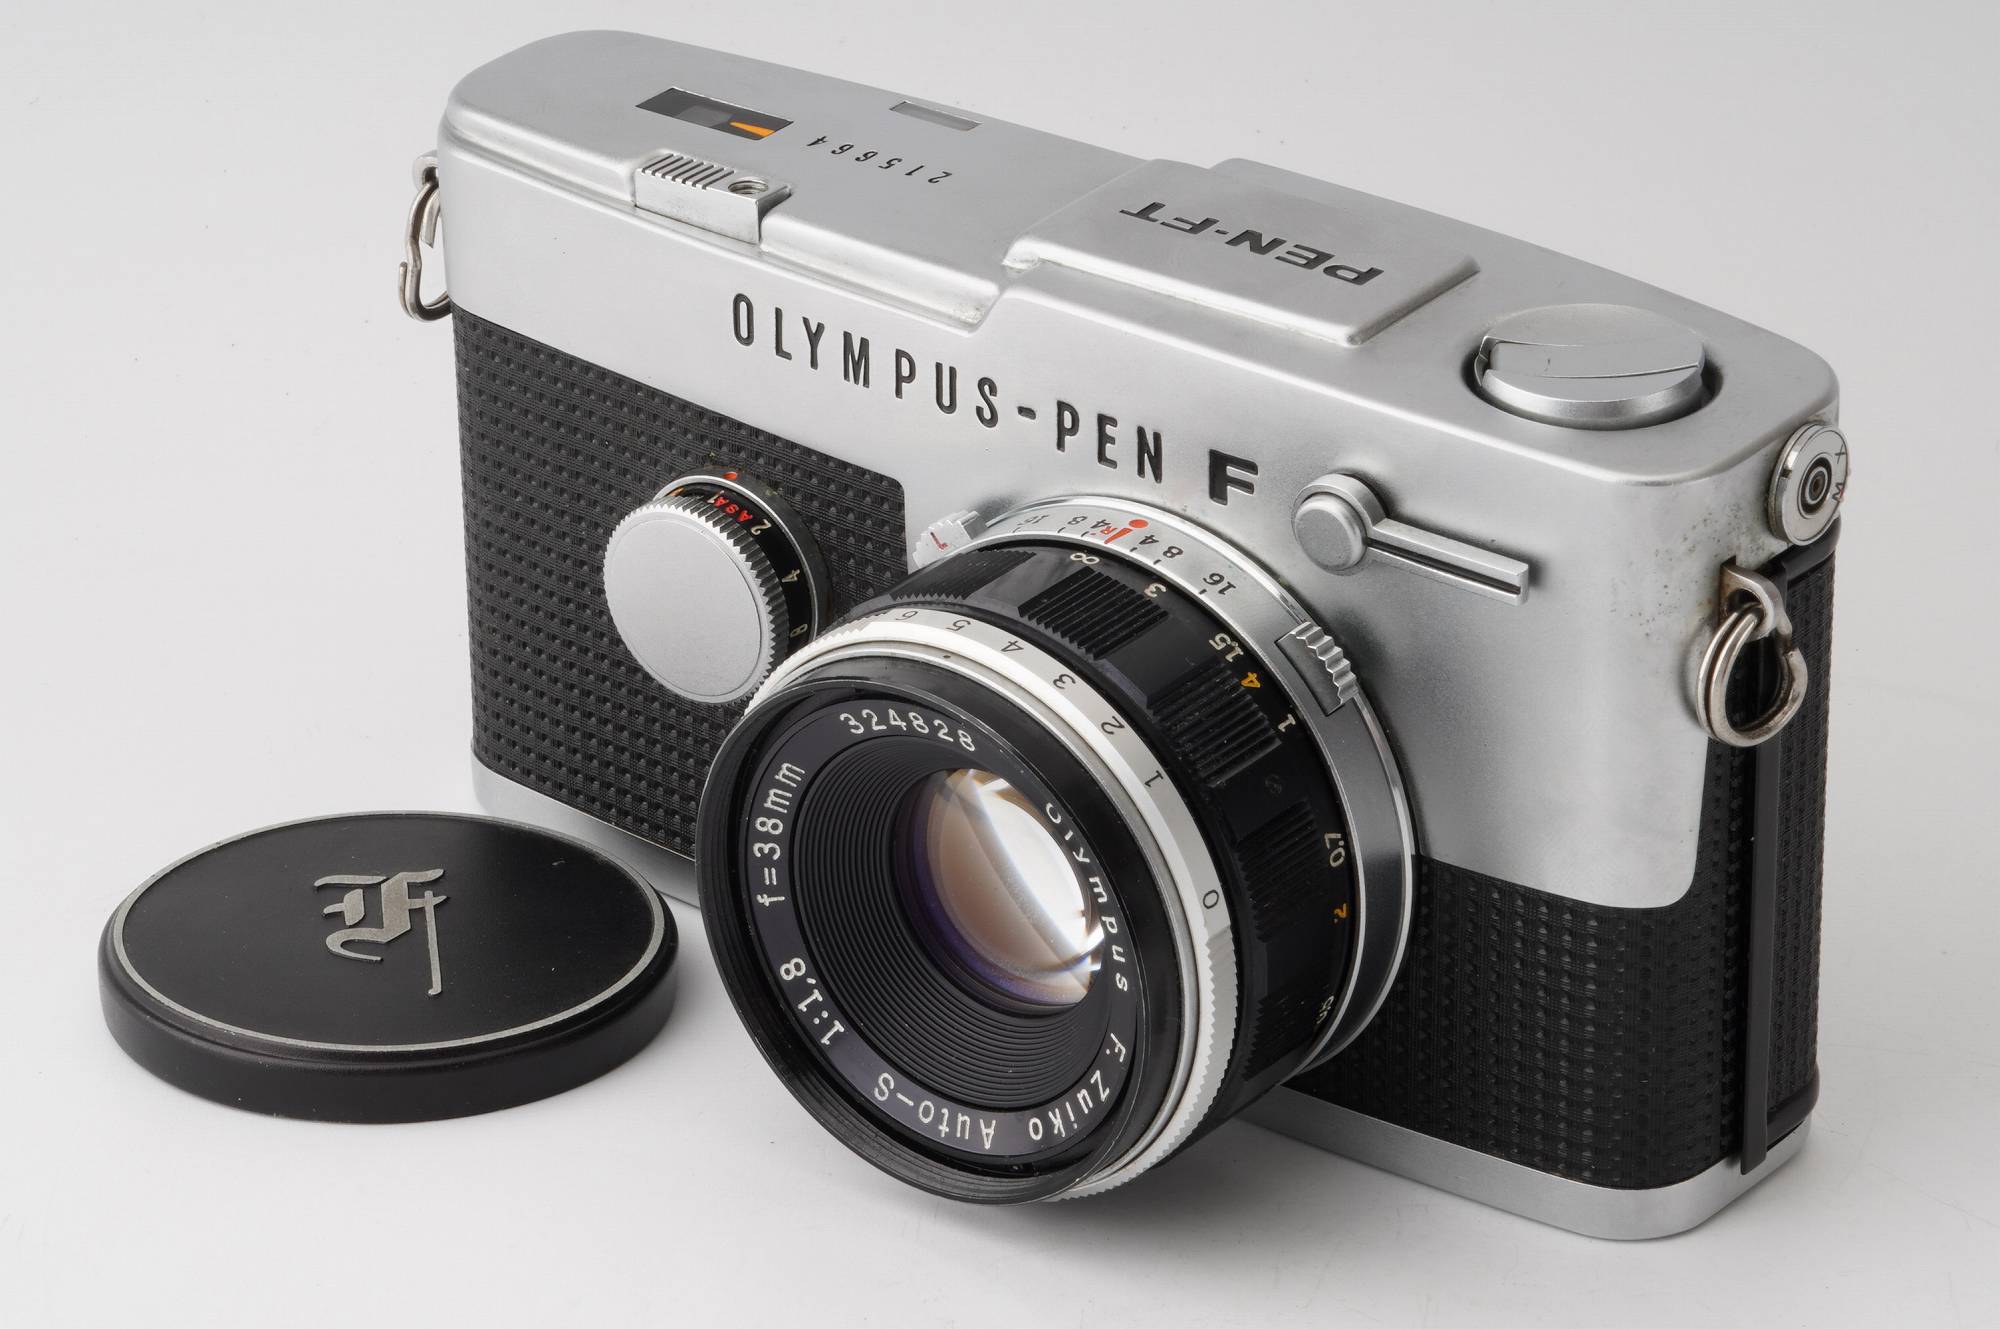 オリンパス PEN F + F.Zuiko Auto-S 38mm f1.8 - フィルムカメラ